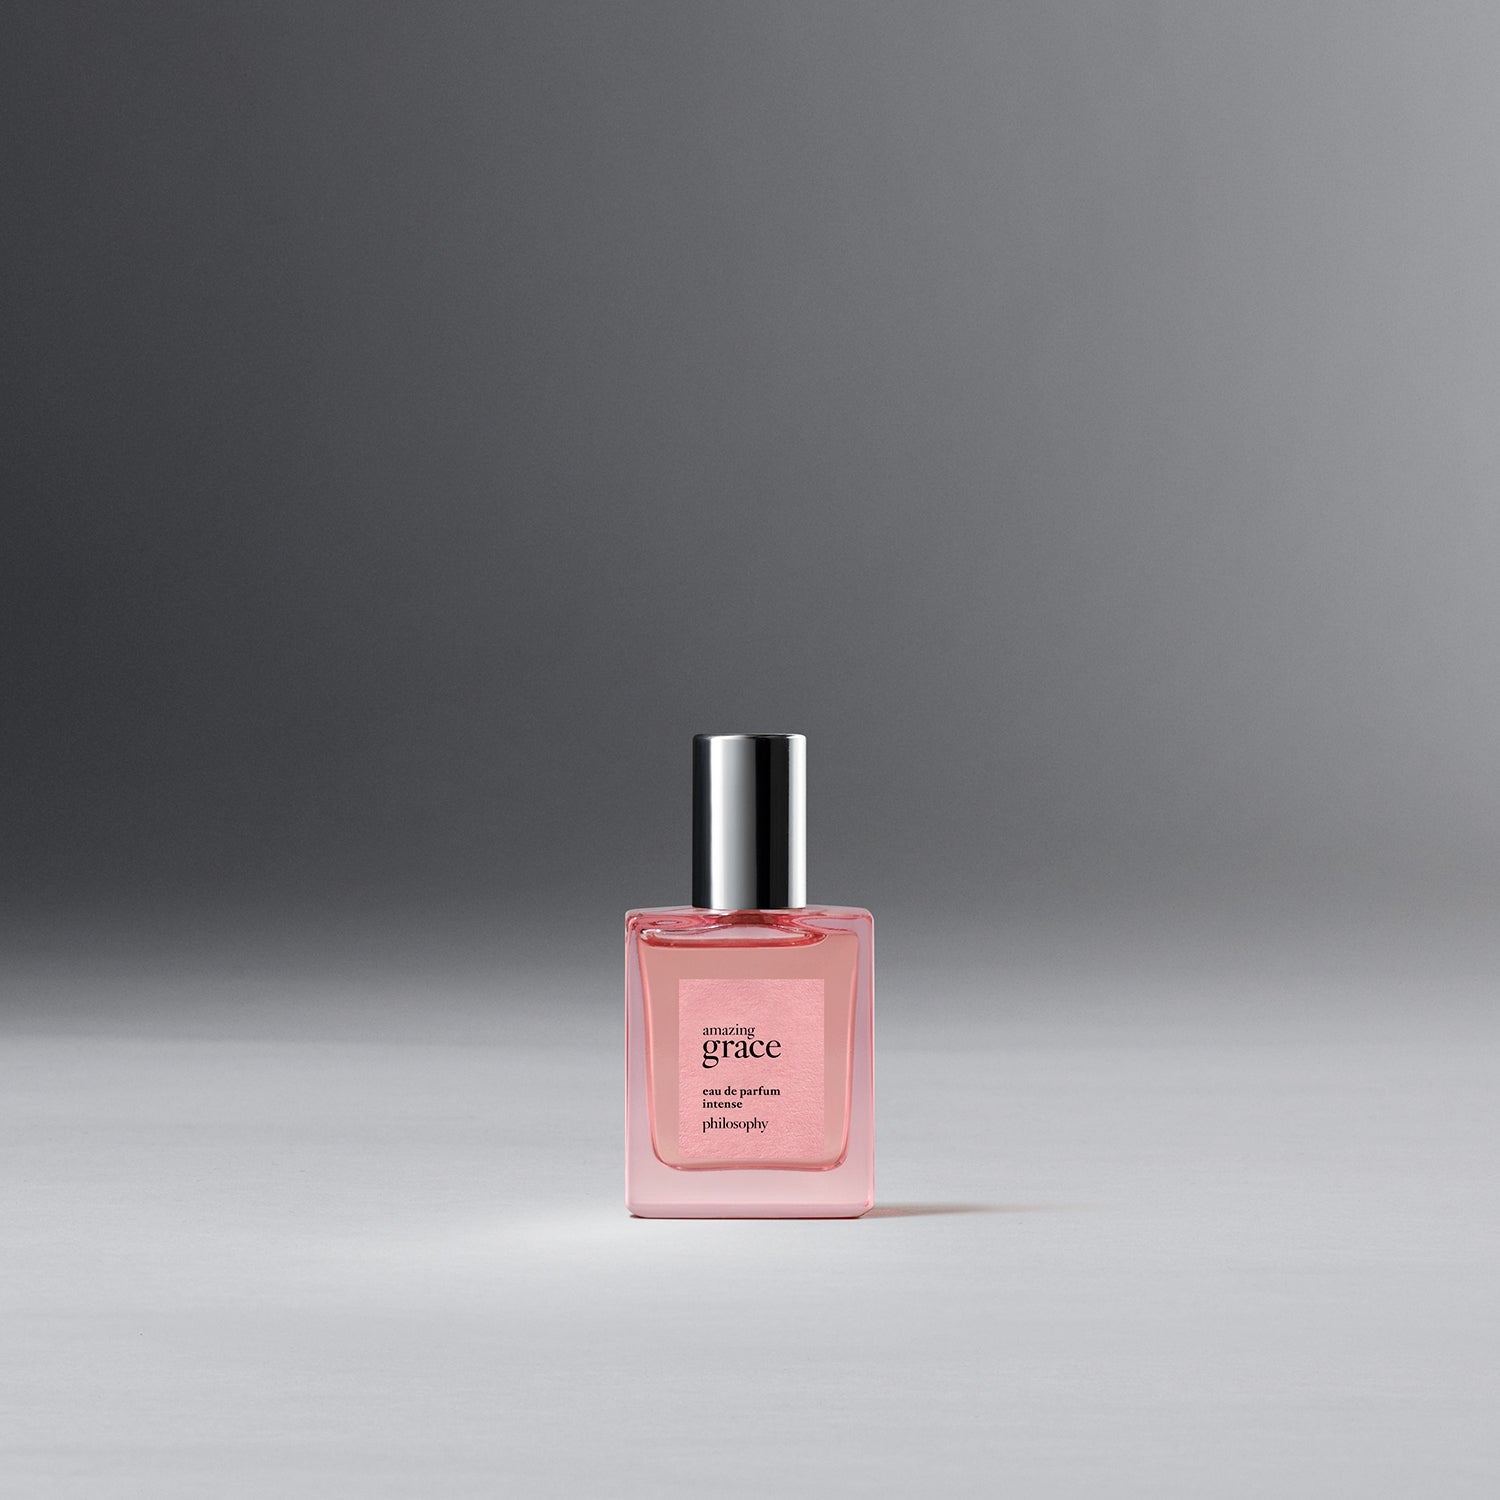 Pure Grace by Philosophy (Eau de Toilette) » Reviews & Perfume Facts